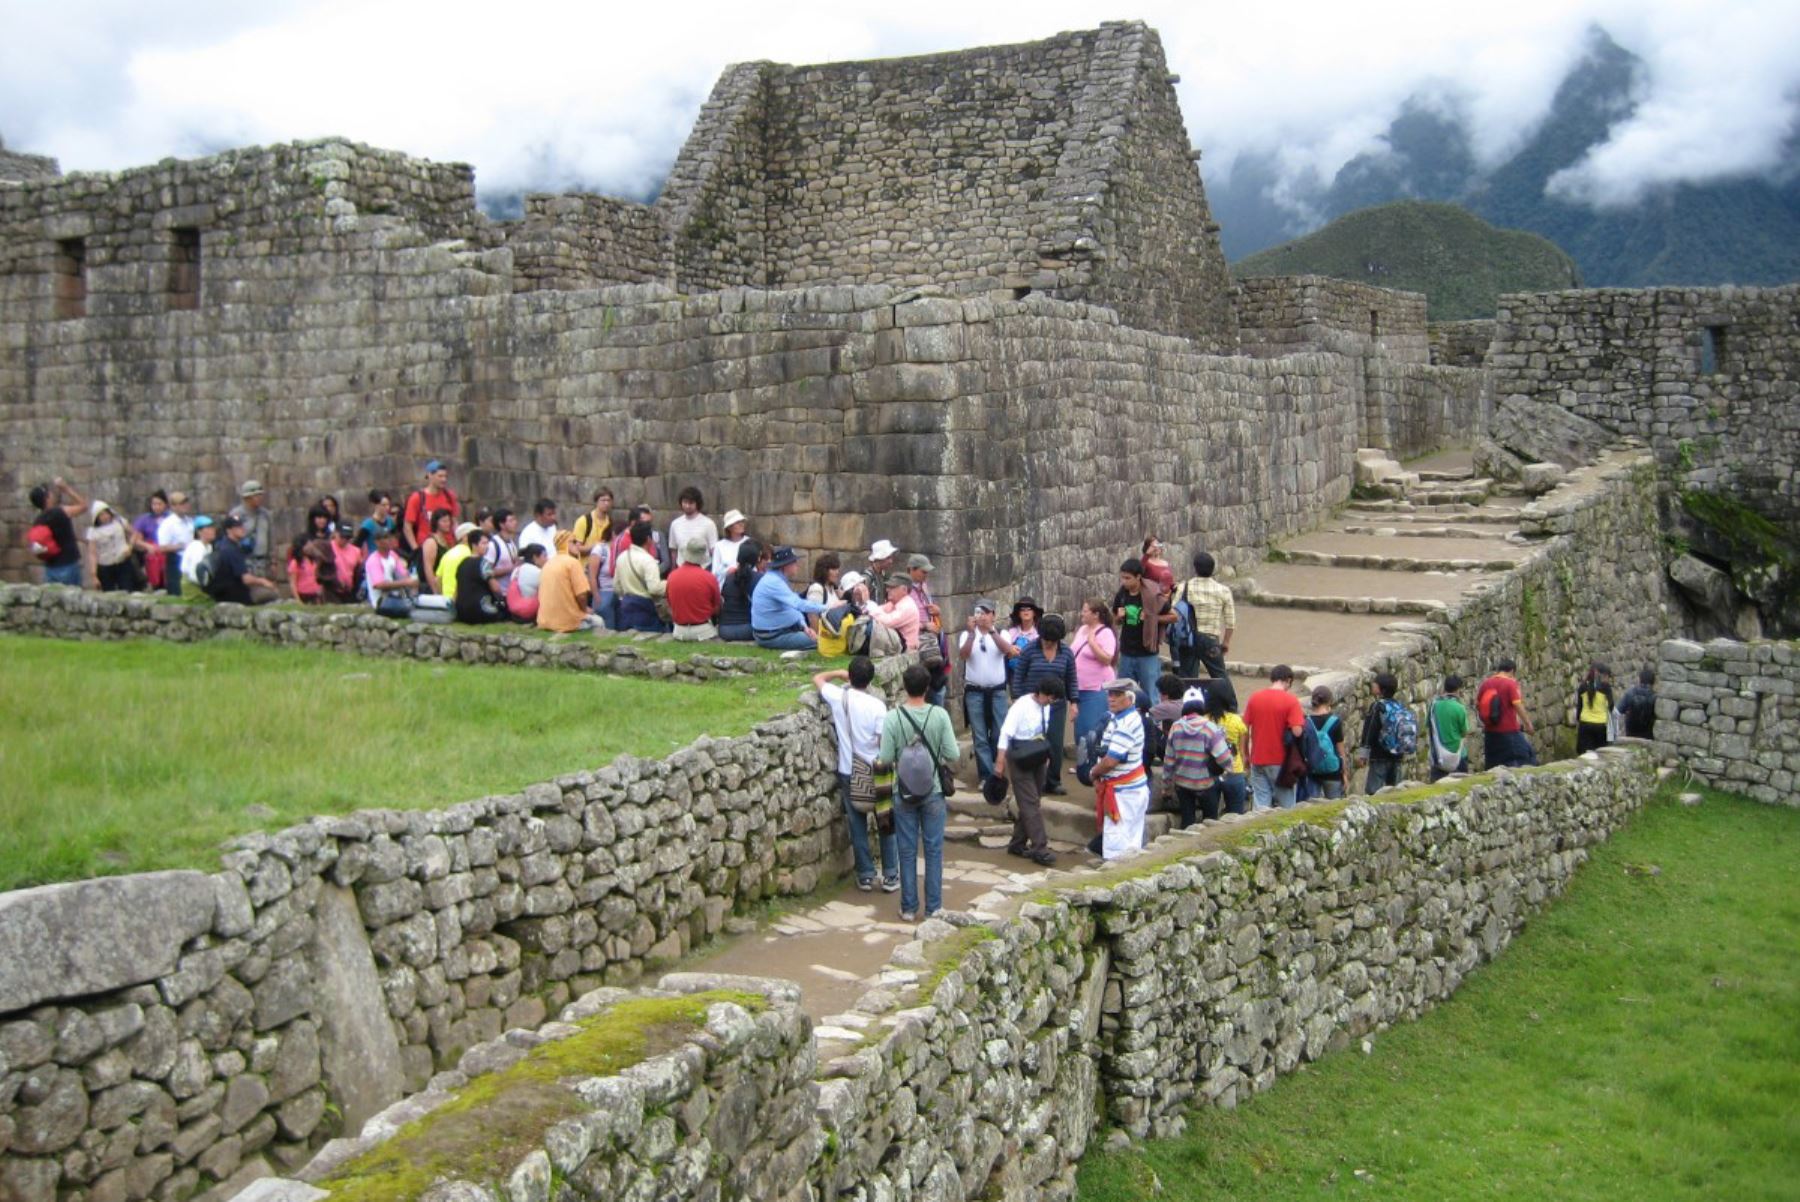 Turistas nacionales y extranjeros recorren el parque arqueológico de Machu Picchu, el Valle Sagrado de Los Incas y el centro histórico de la ciudad del Cusco sin inconvenientes, pese al anunciado paro agrario en toda la región.ANDINA/Difusión